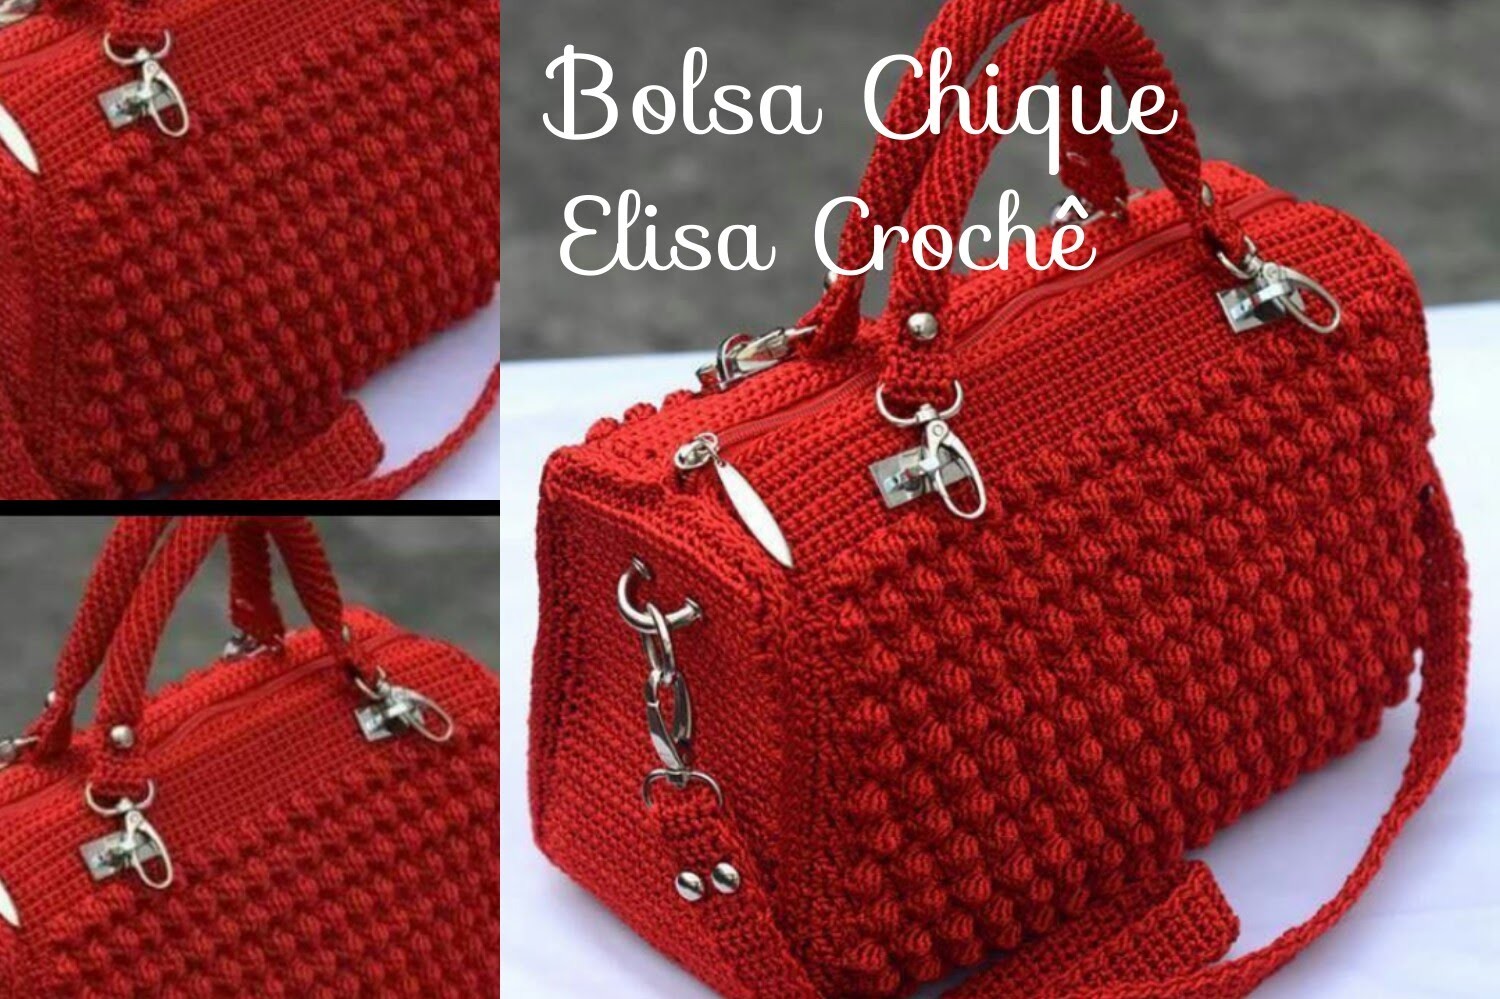 Versão canhotos : Bolsa chique em crochê ( 1ª parte ) # Elisa Crochê